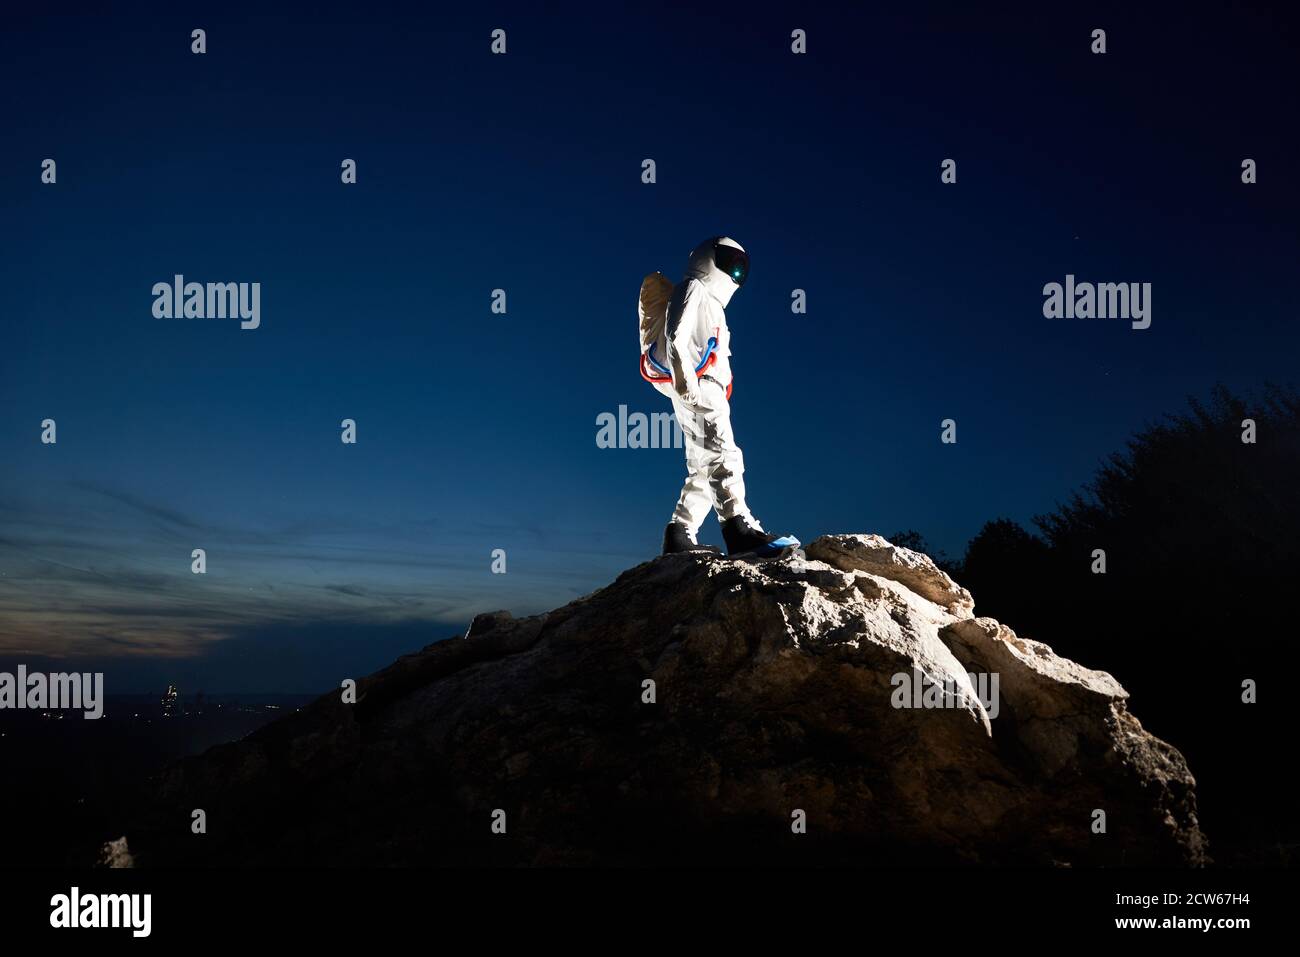 Pleine longueur de spaceman atteignant le sommet de la colline rocheuse avec beau ciel bleu sur le fond. Astronaute portant un costume blanc avec casque. Concept d'exploration spatiale par race humaine. Banque D'Images